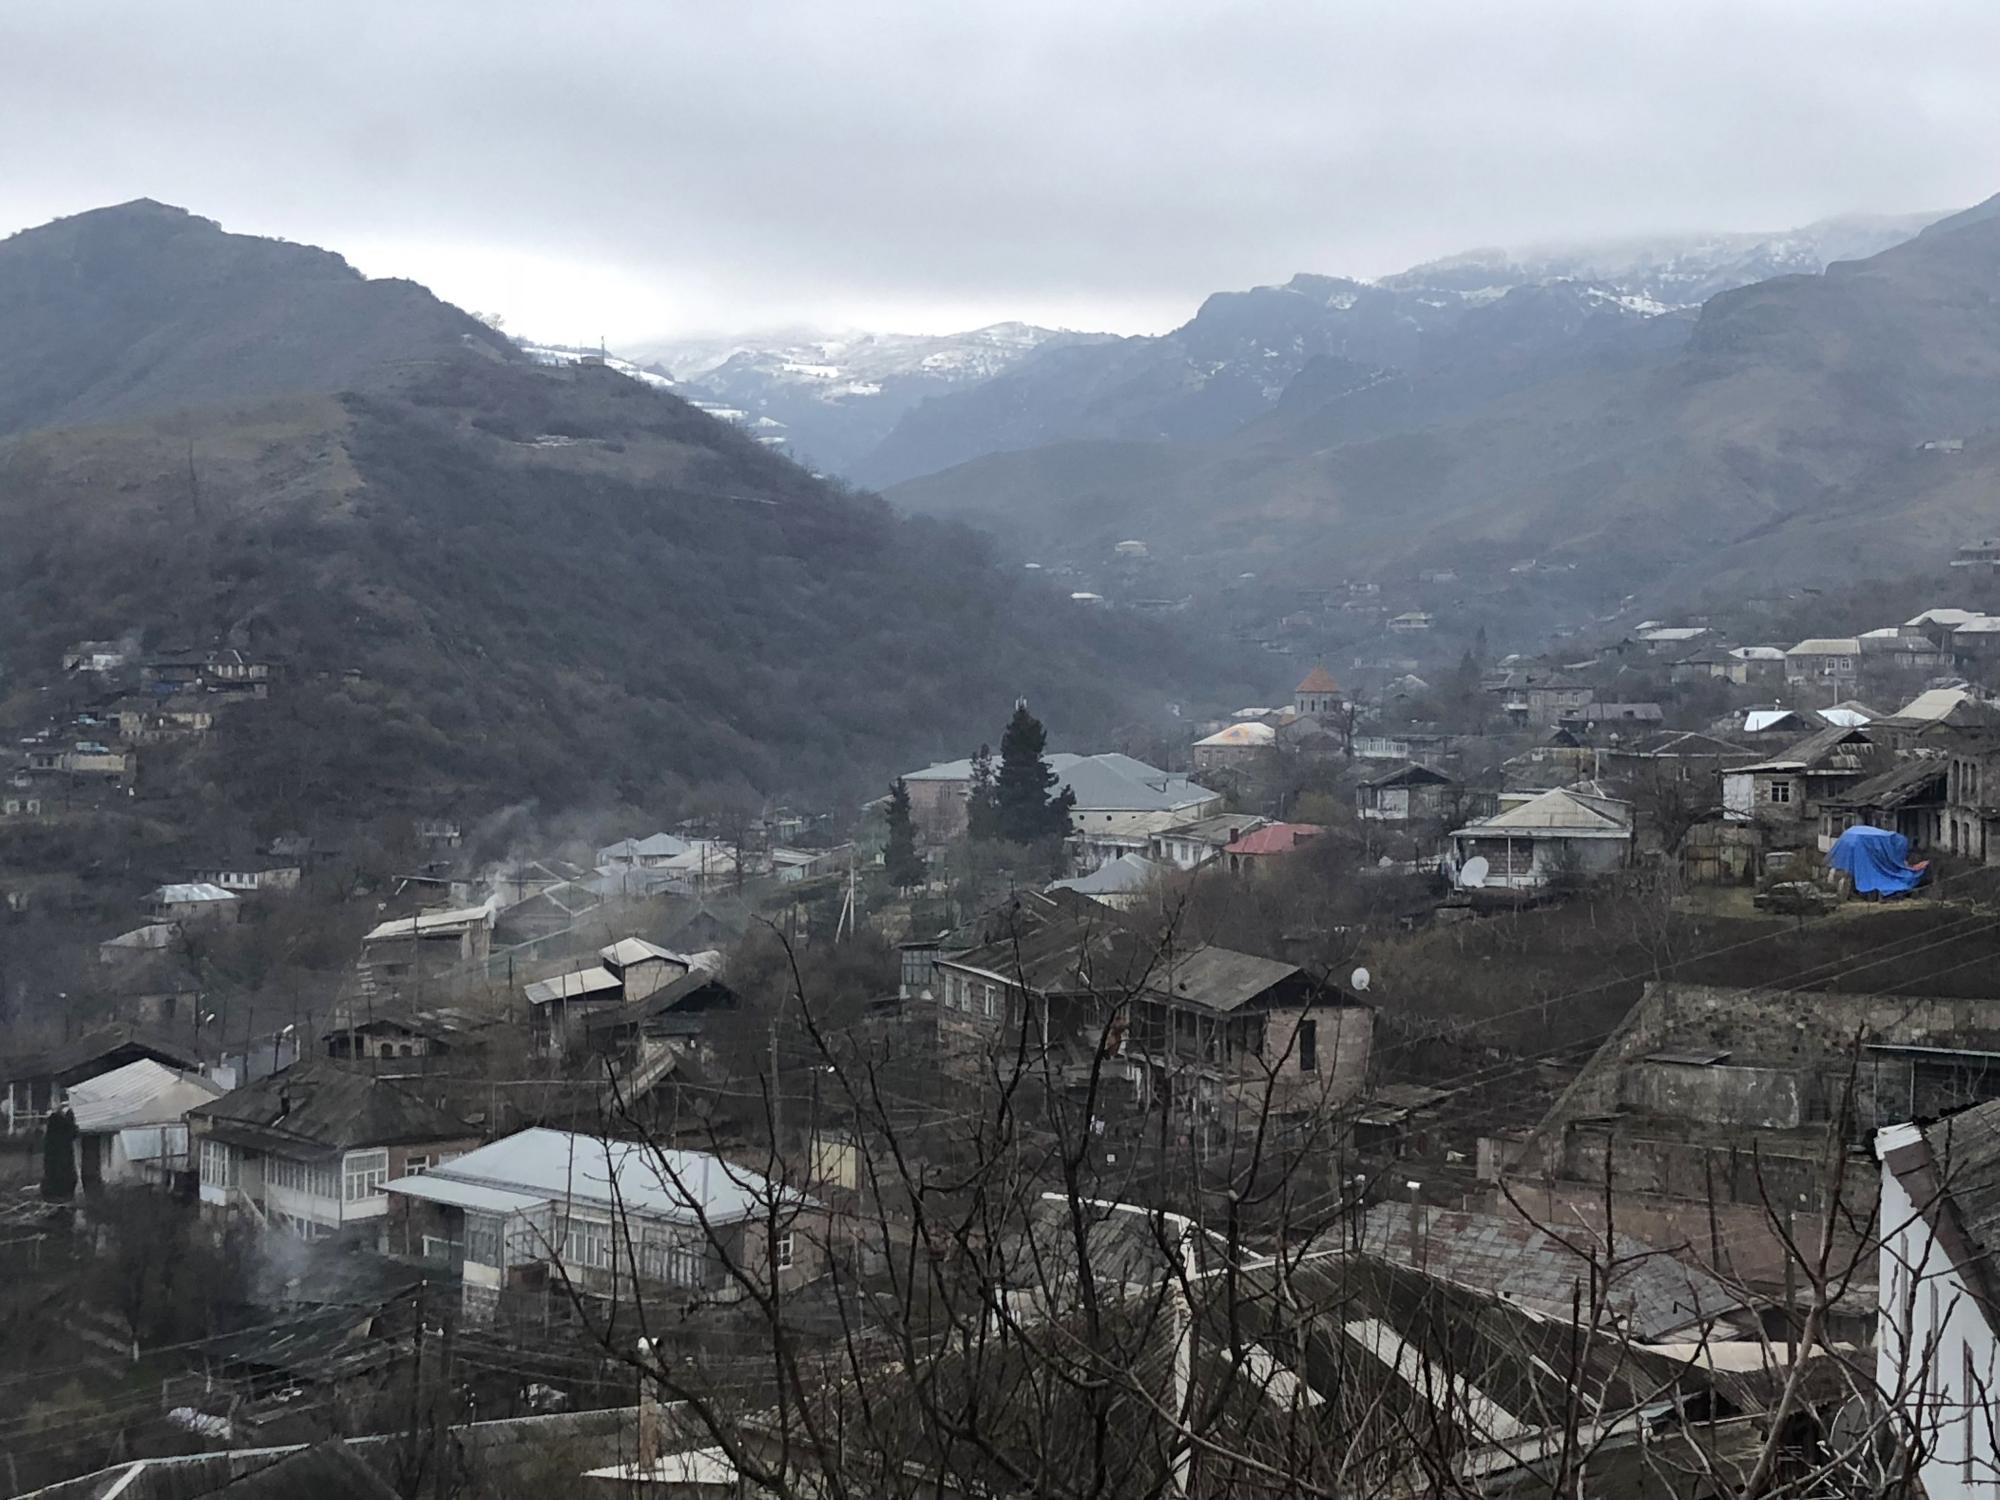 Մովսես գյուղում ադրբեջանական կողմից կրակոցներն արձակվում են գյուղին շատ մոտ հեռավորությամբ․ ՄԻՊ